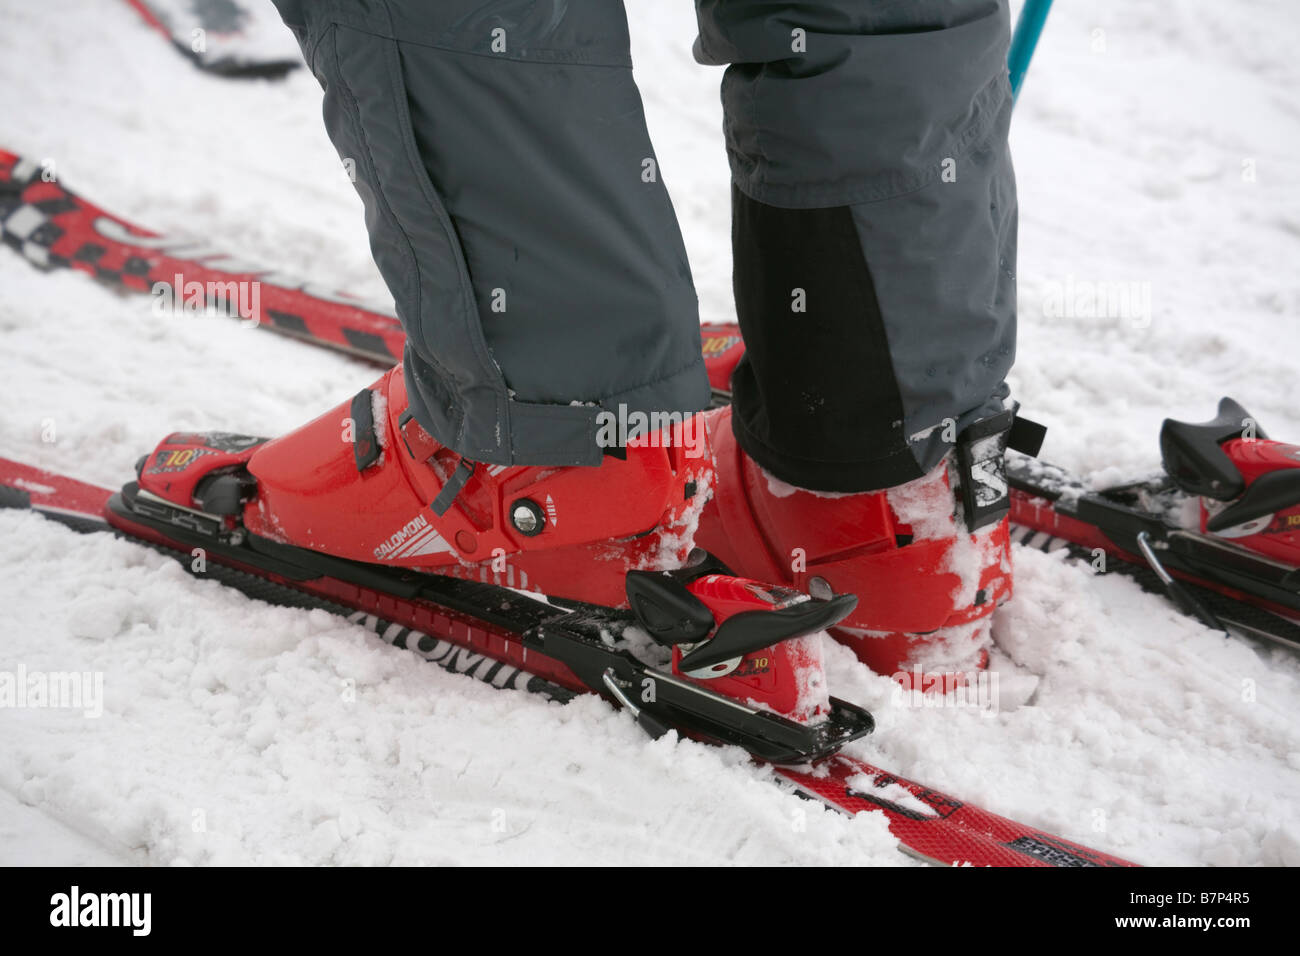 Primer plano de un hombre que llevaba un par de botas de ski Salomon rojo y enlaces en un par de esquís. Europa Foto de stock